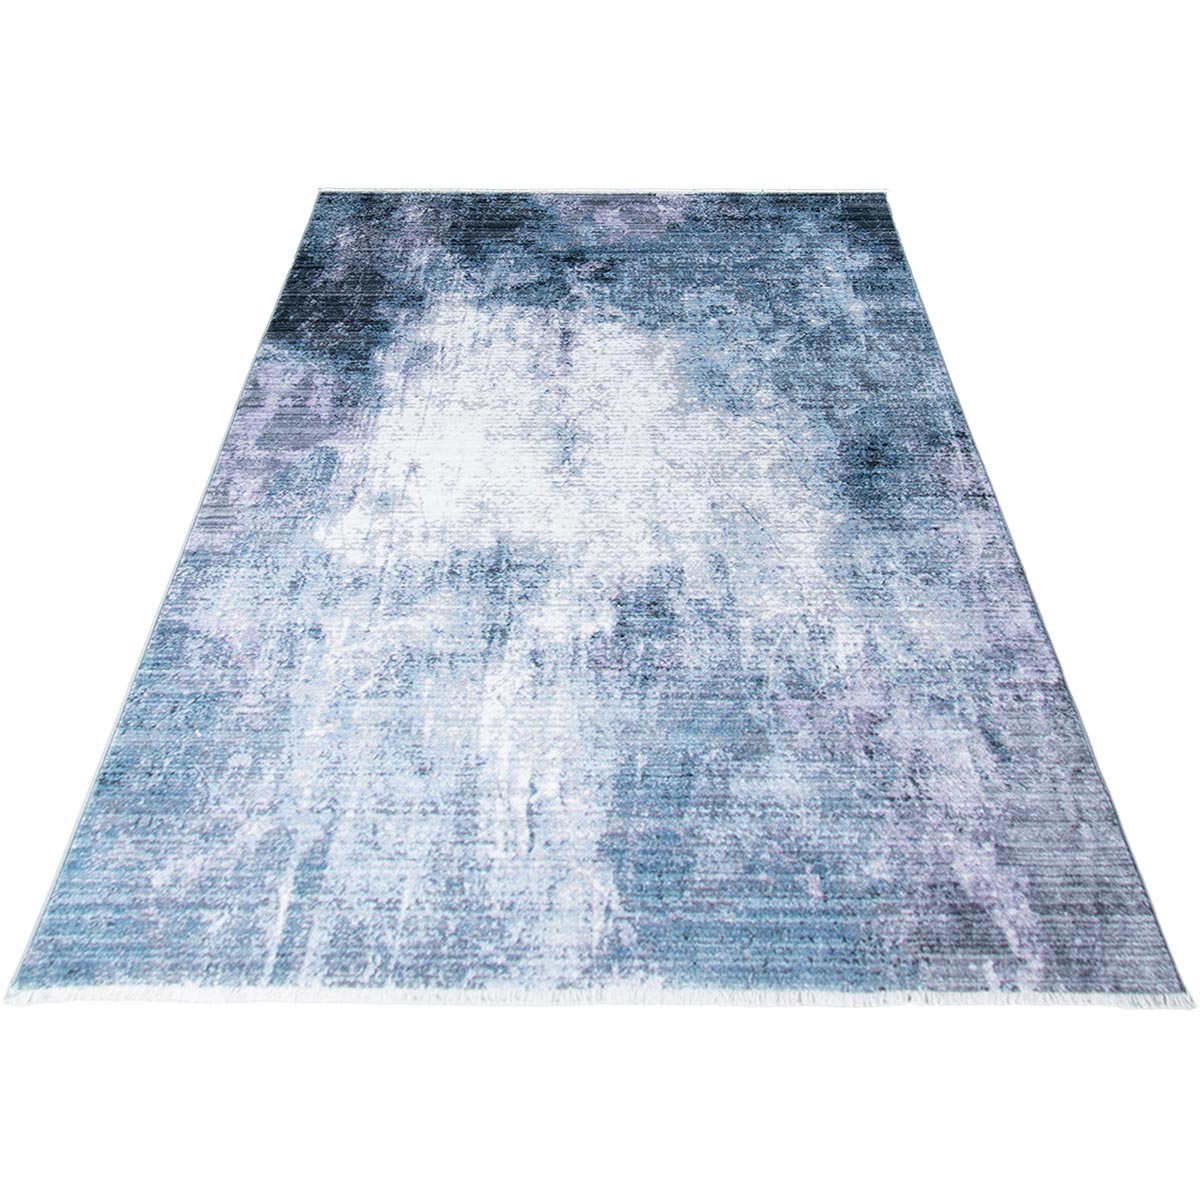 שטיח איסטנבול 07 אפור/כחול עם פרנזים | השטיח האדום